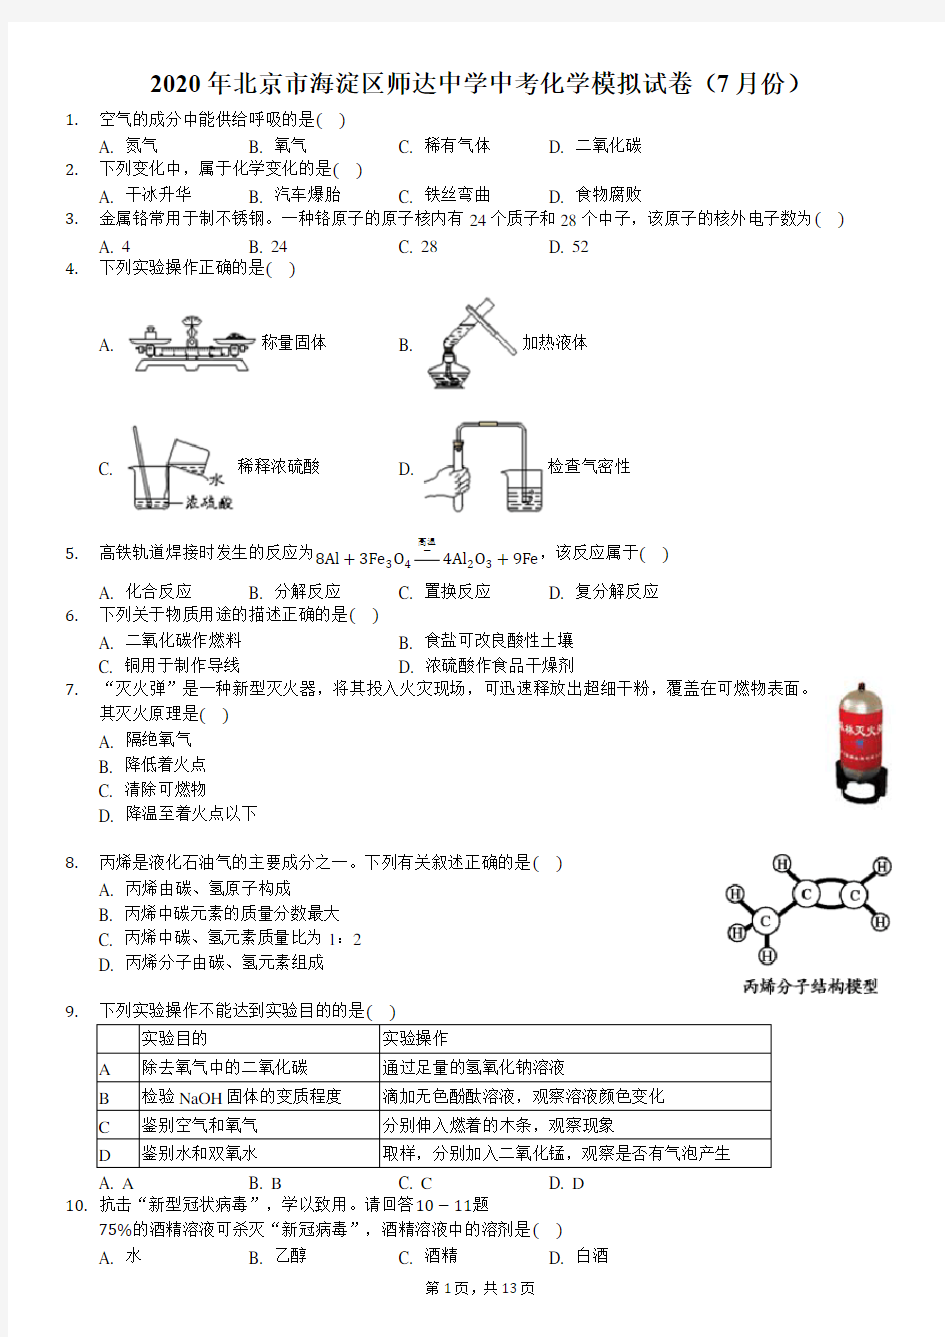 2020年北京市海淀区师达中学中考化学模拟试卷(7月份)